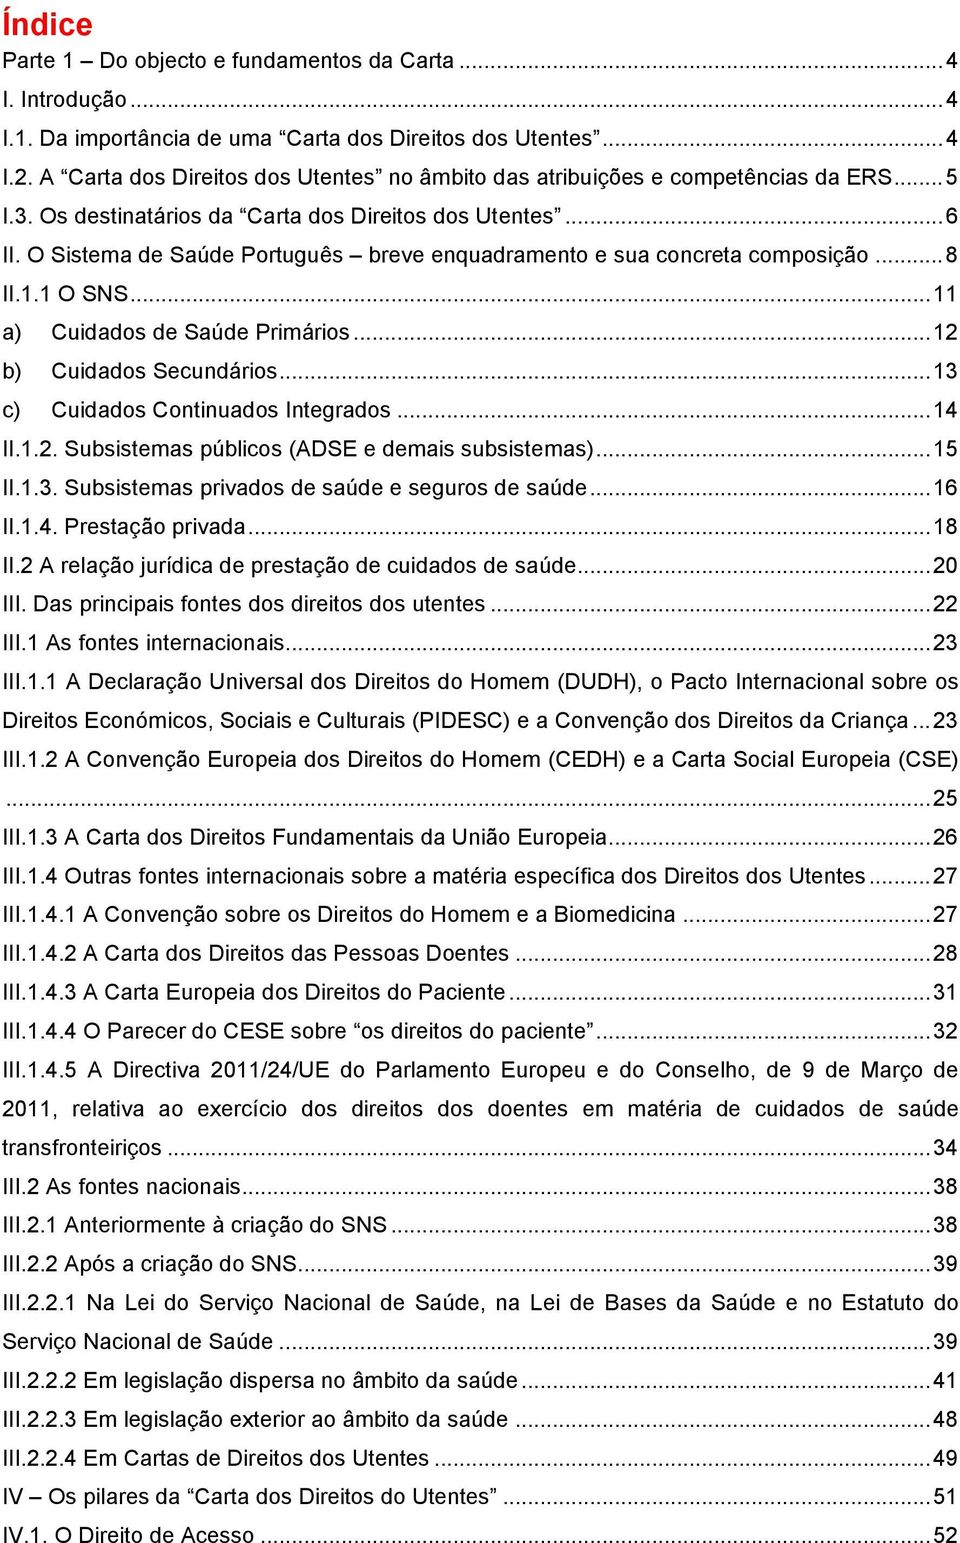 O Sistema de Saúde Português breve enquadramento e sua concreta composição... 8 II.1.1 O SNS... 11 a) Cuidados de Saúde Primários... 12 b) Cuidados Secundários... 13 c) Cuidados Continuados Integrados.